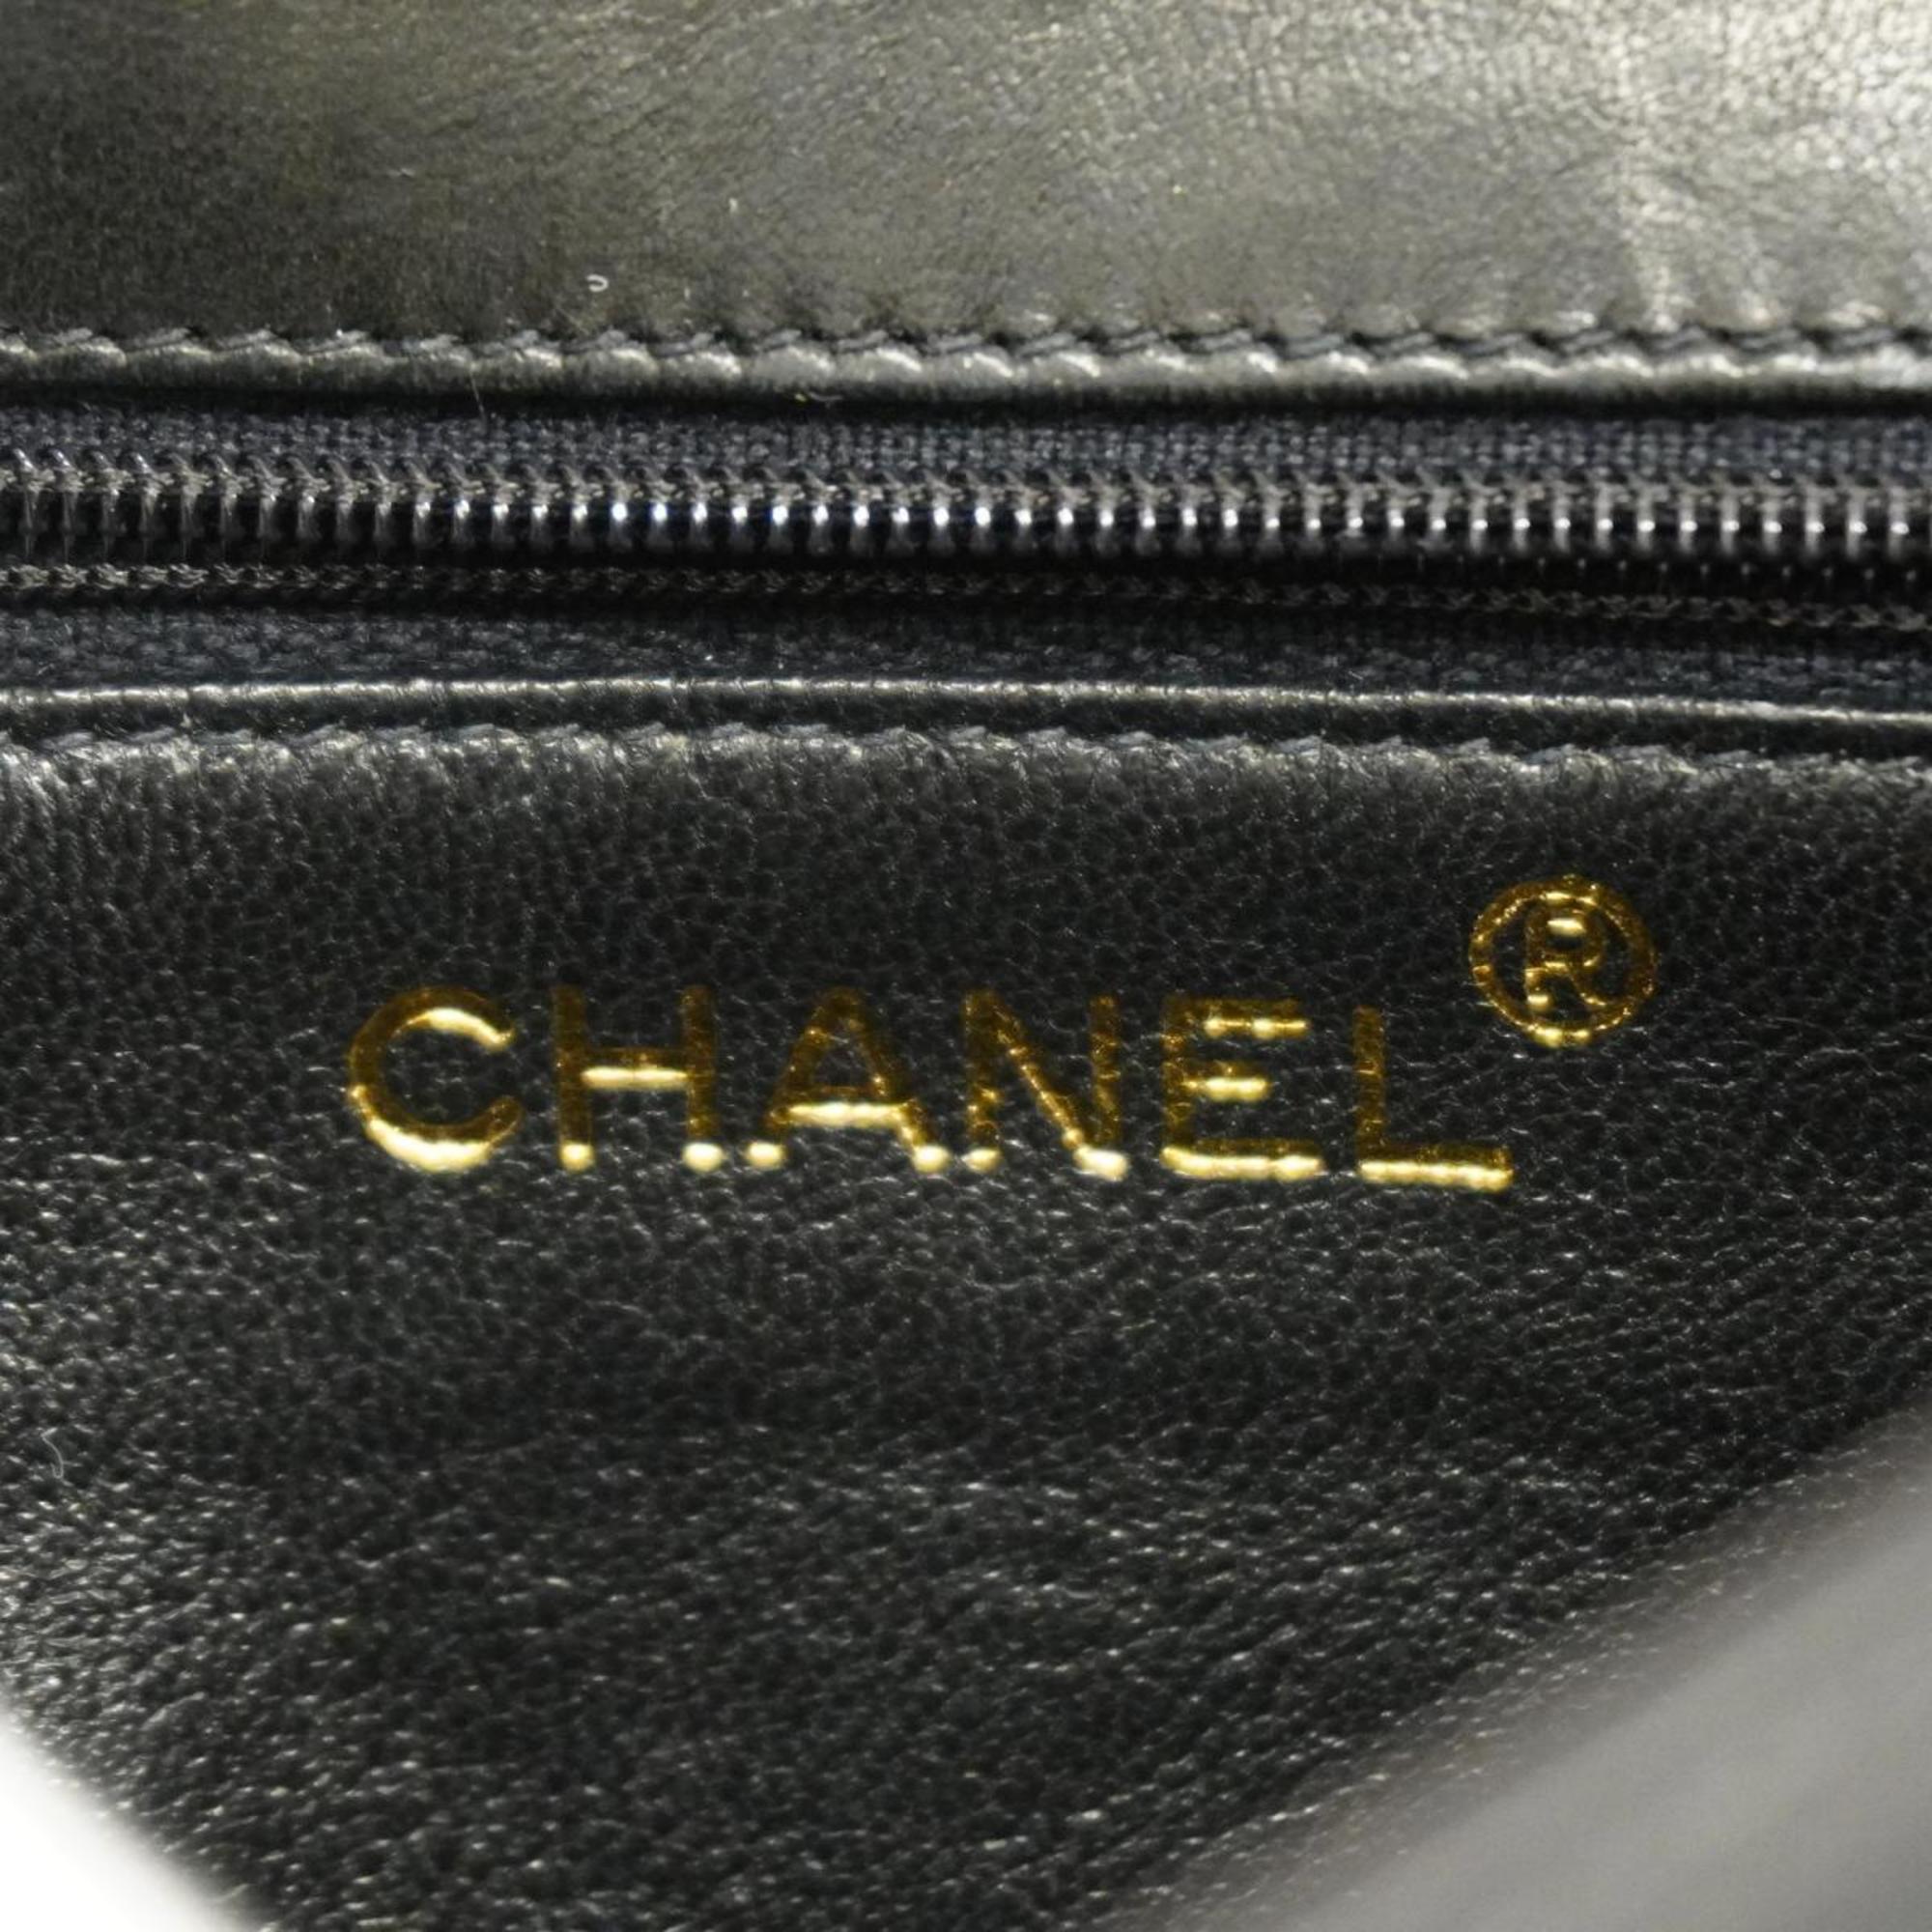 シャネル(Chanel) シャネル ショルダーバッグ チェーンショルダー ラムスキン ブラック   レディース